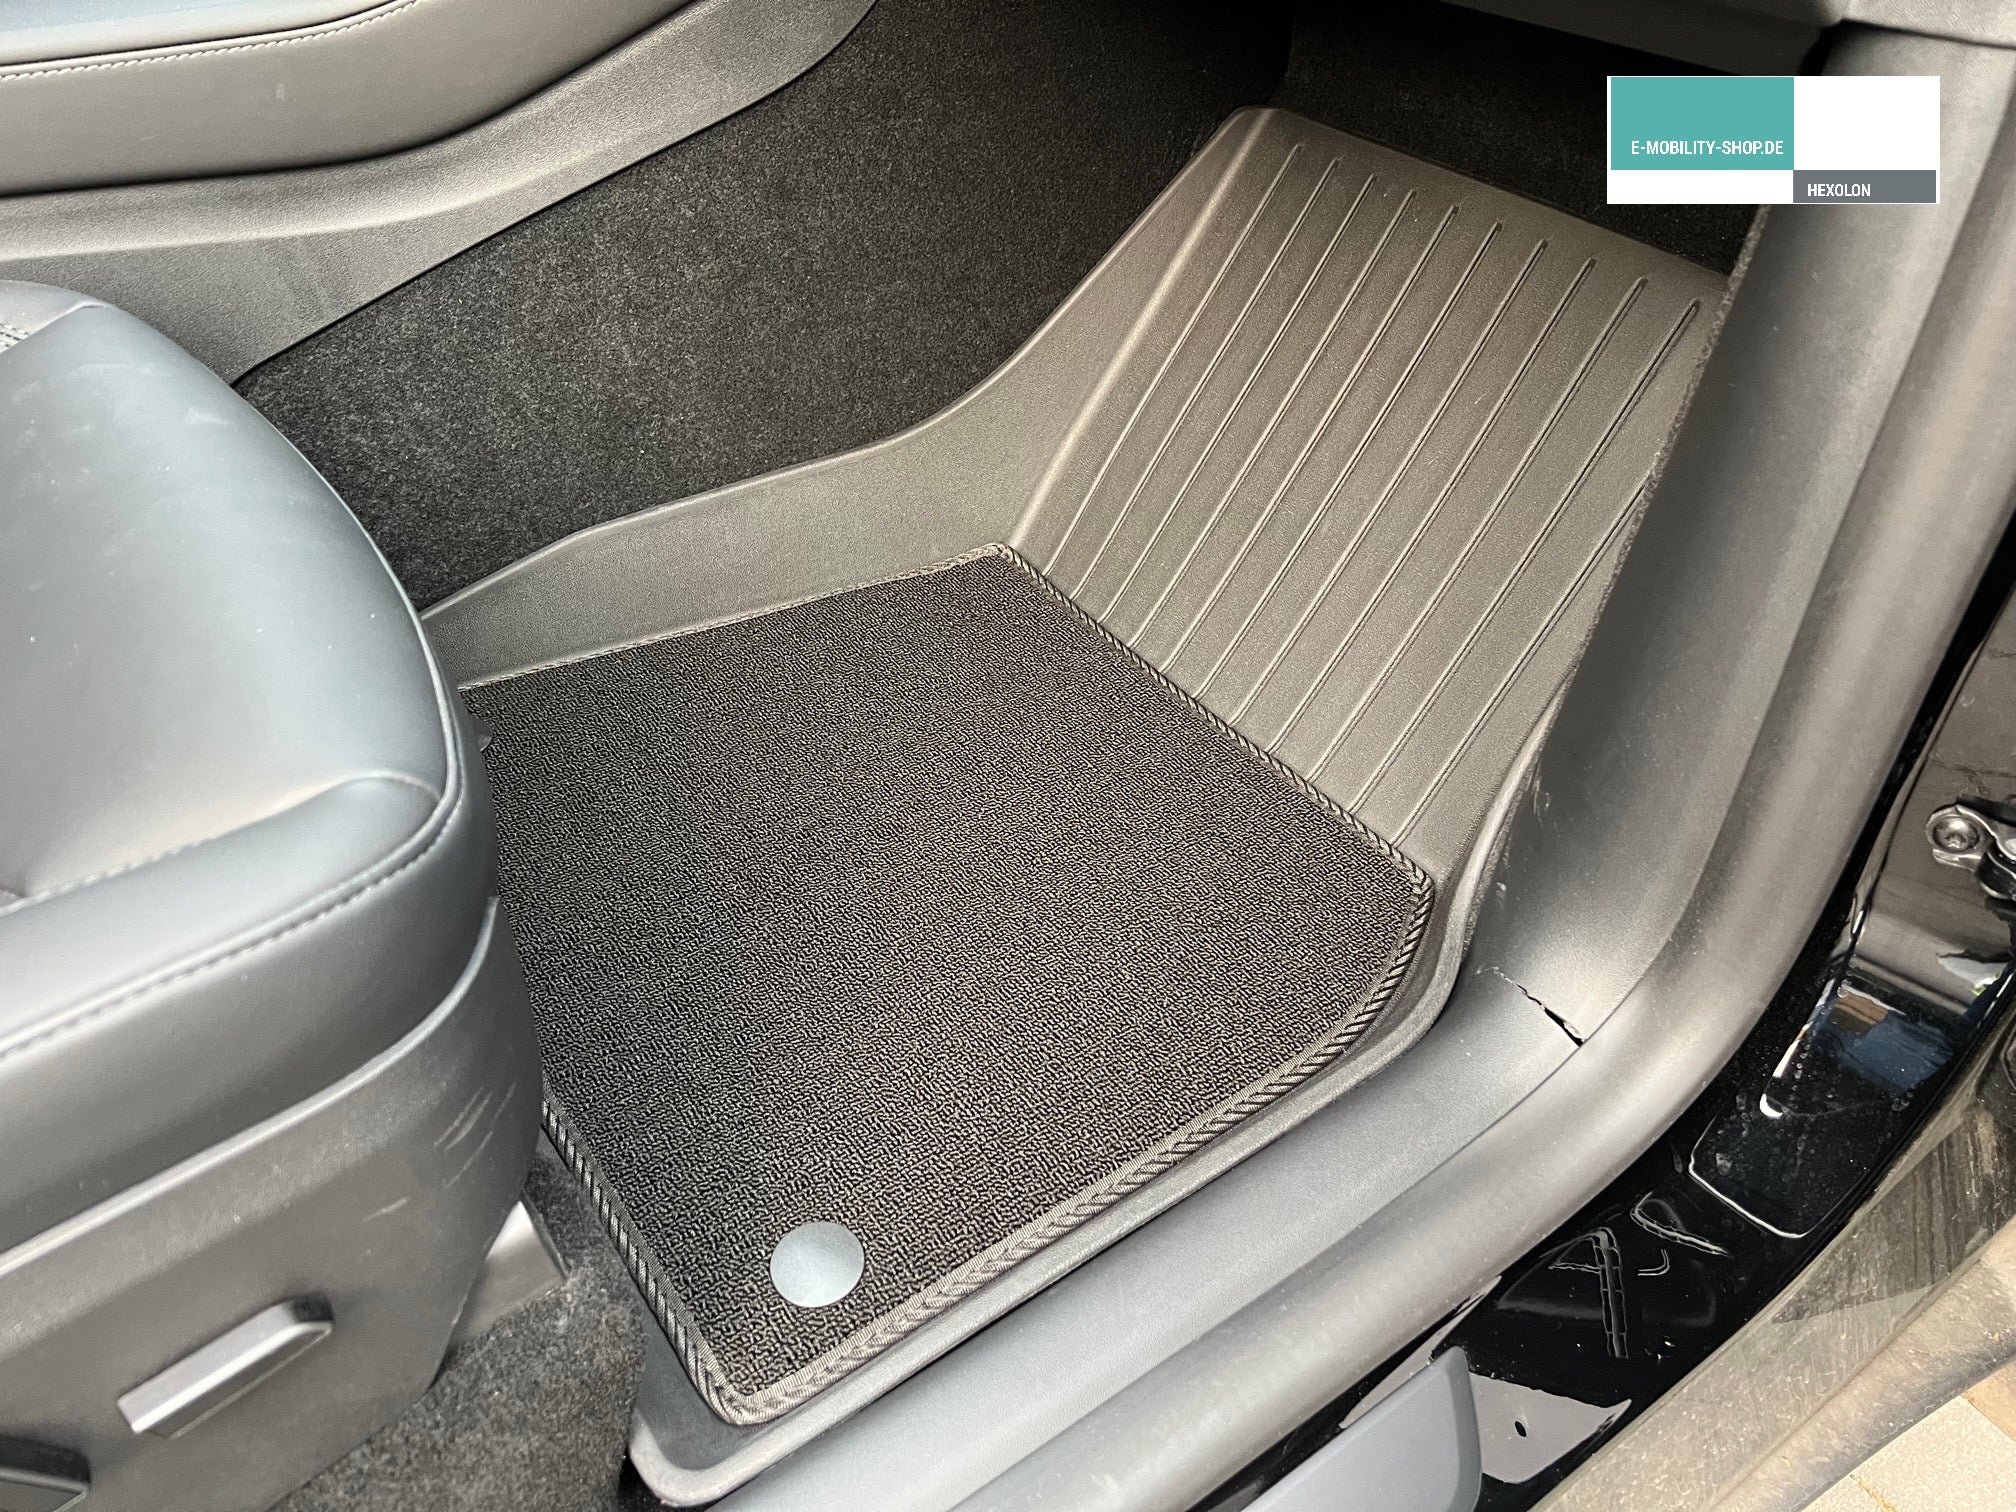 Tesla Model Y luxury floor mat set, 6 pieces - rubber mat with